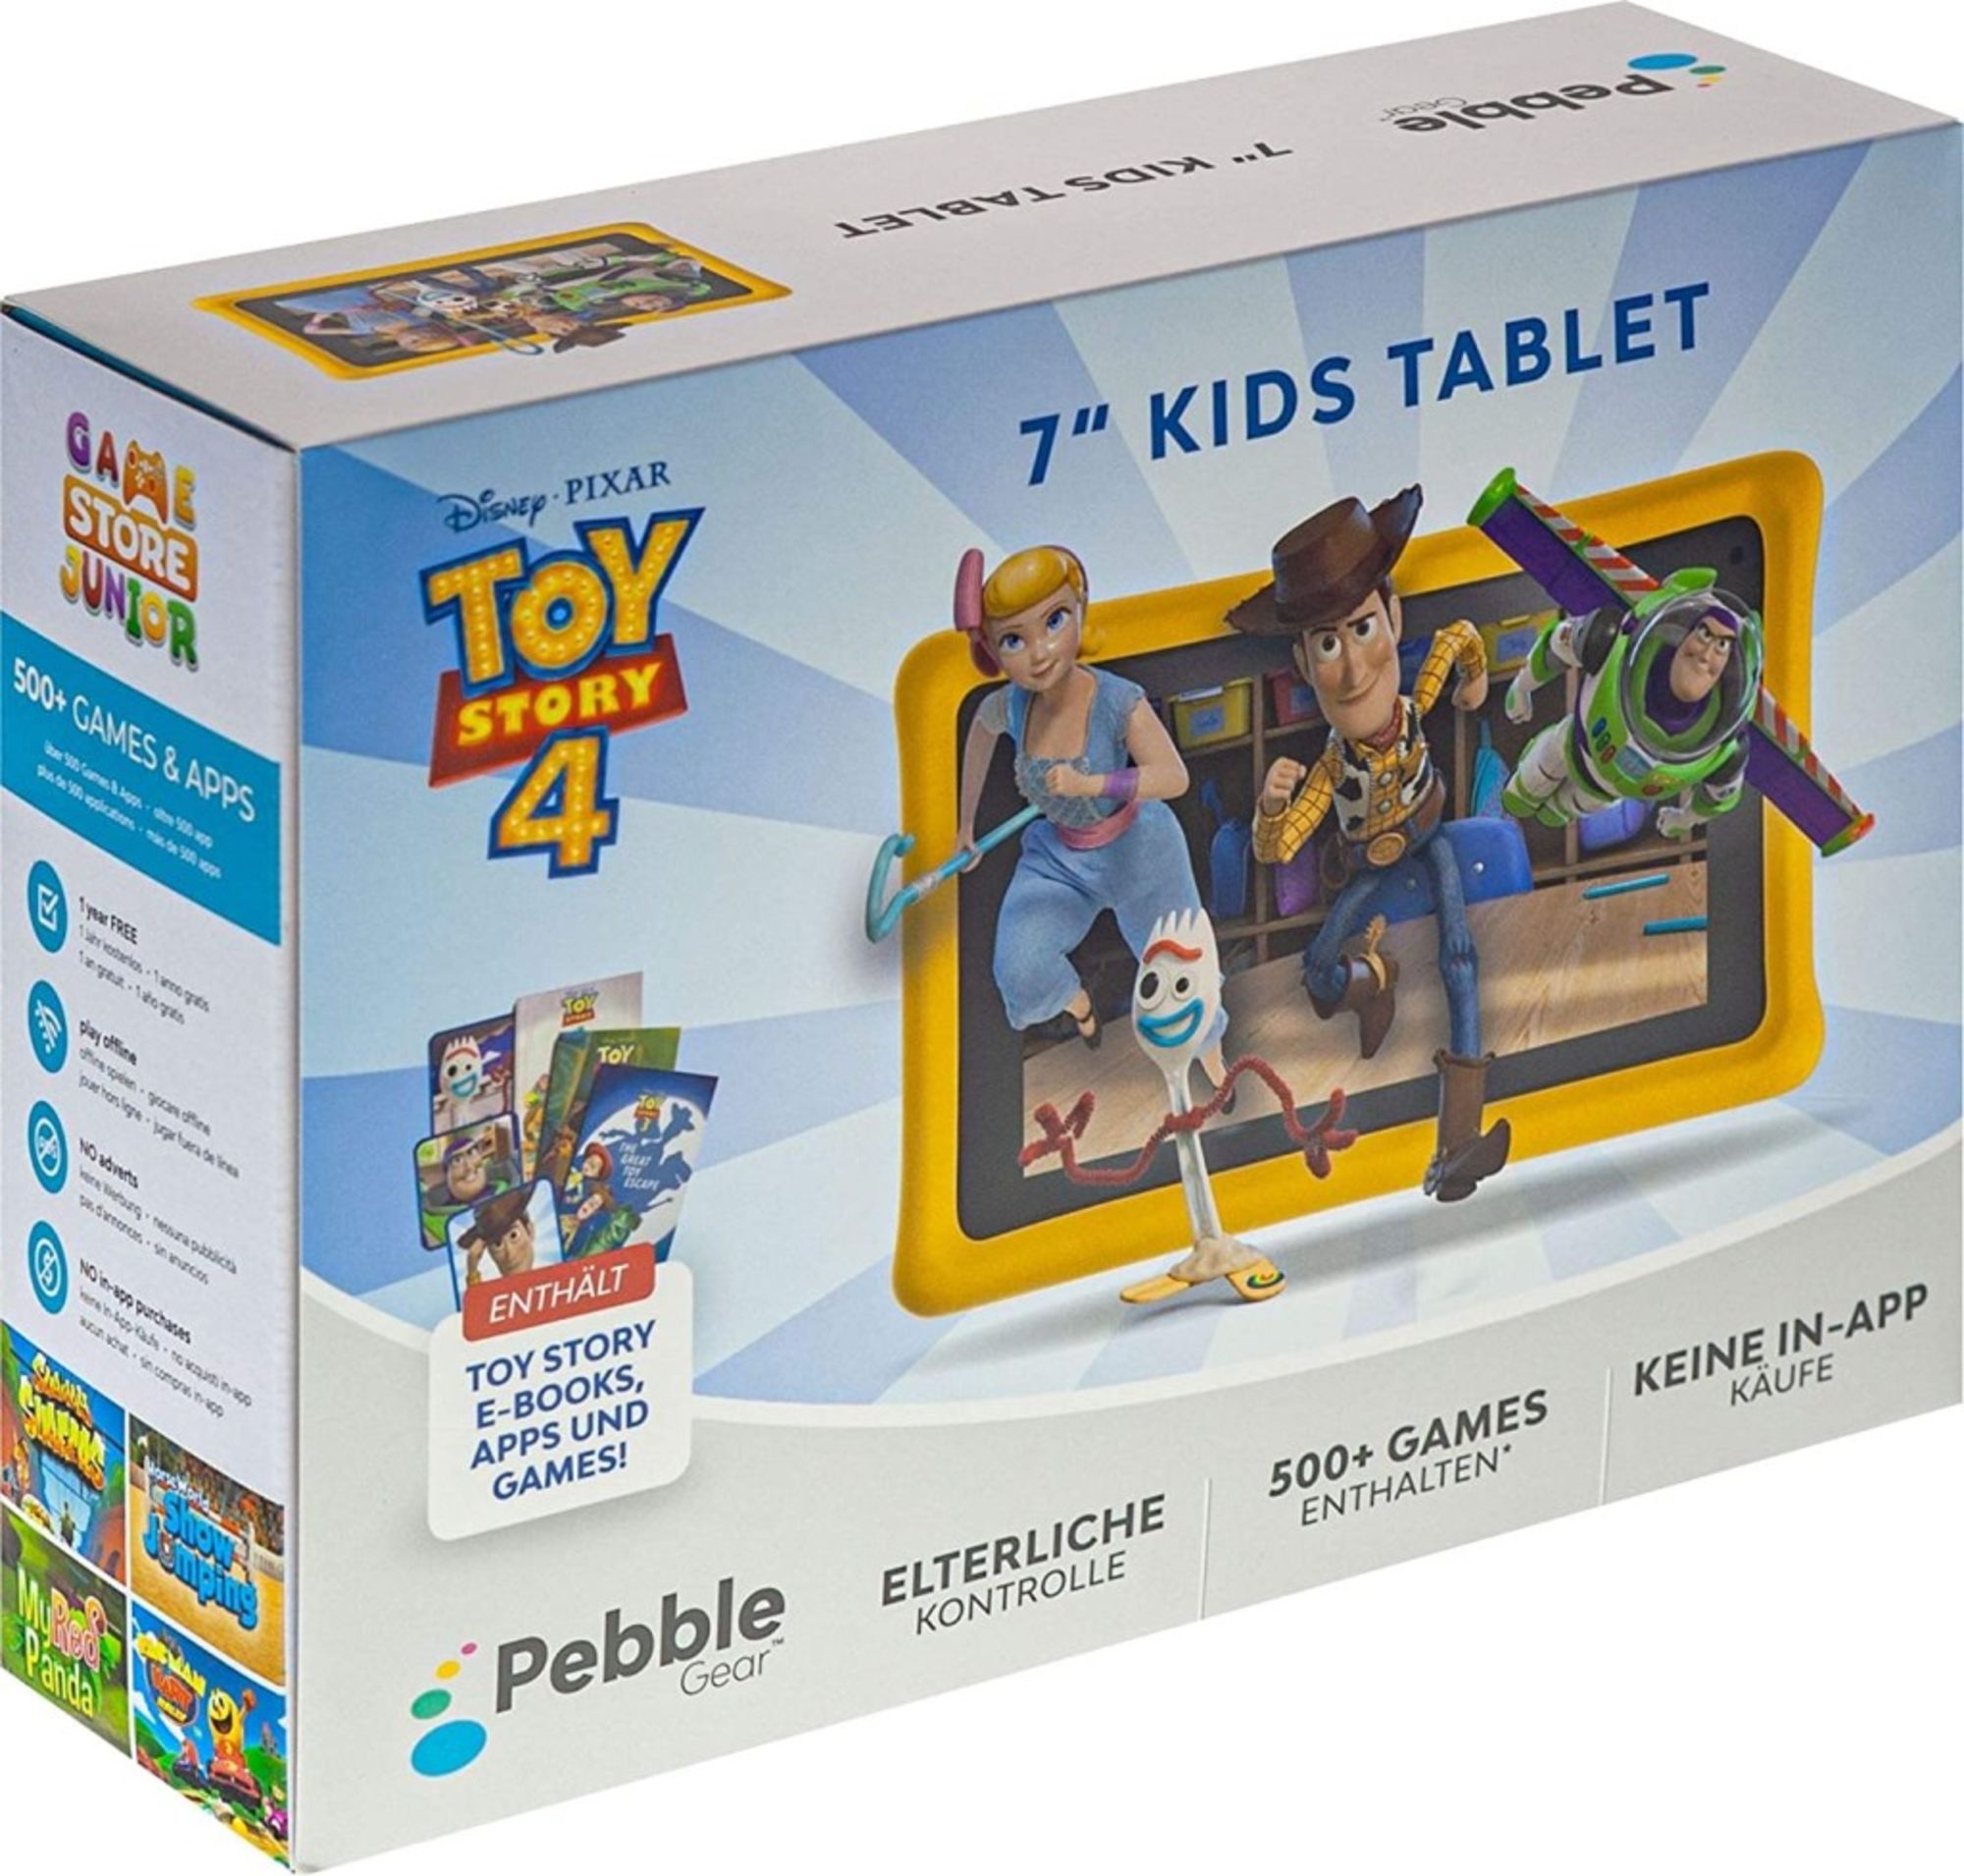 Pebble Gear 7” tablette enfant – Disney Toy Story 4 Tablette (Toy Story 4),  boîtier Pare-Chocs conçu pour Enfants, contrôle